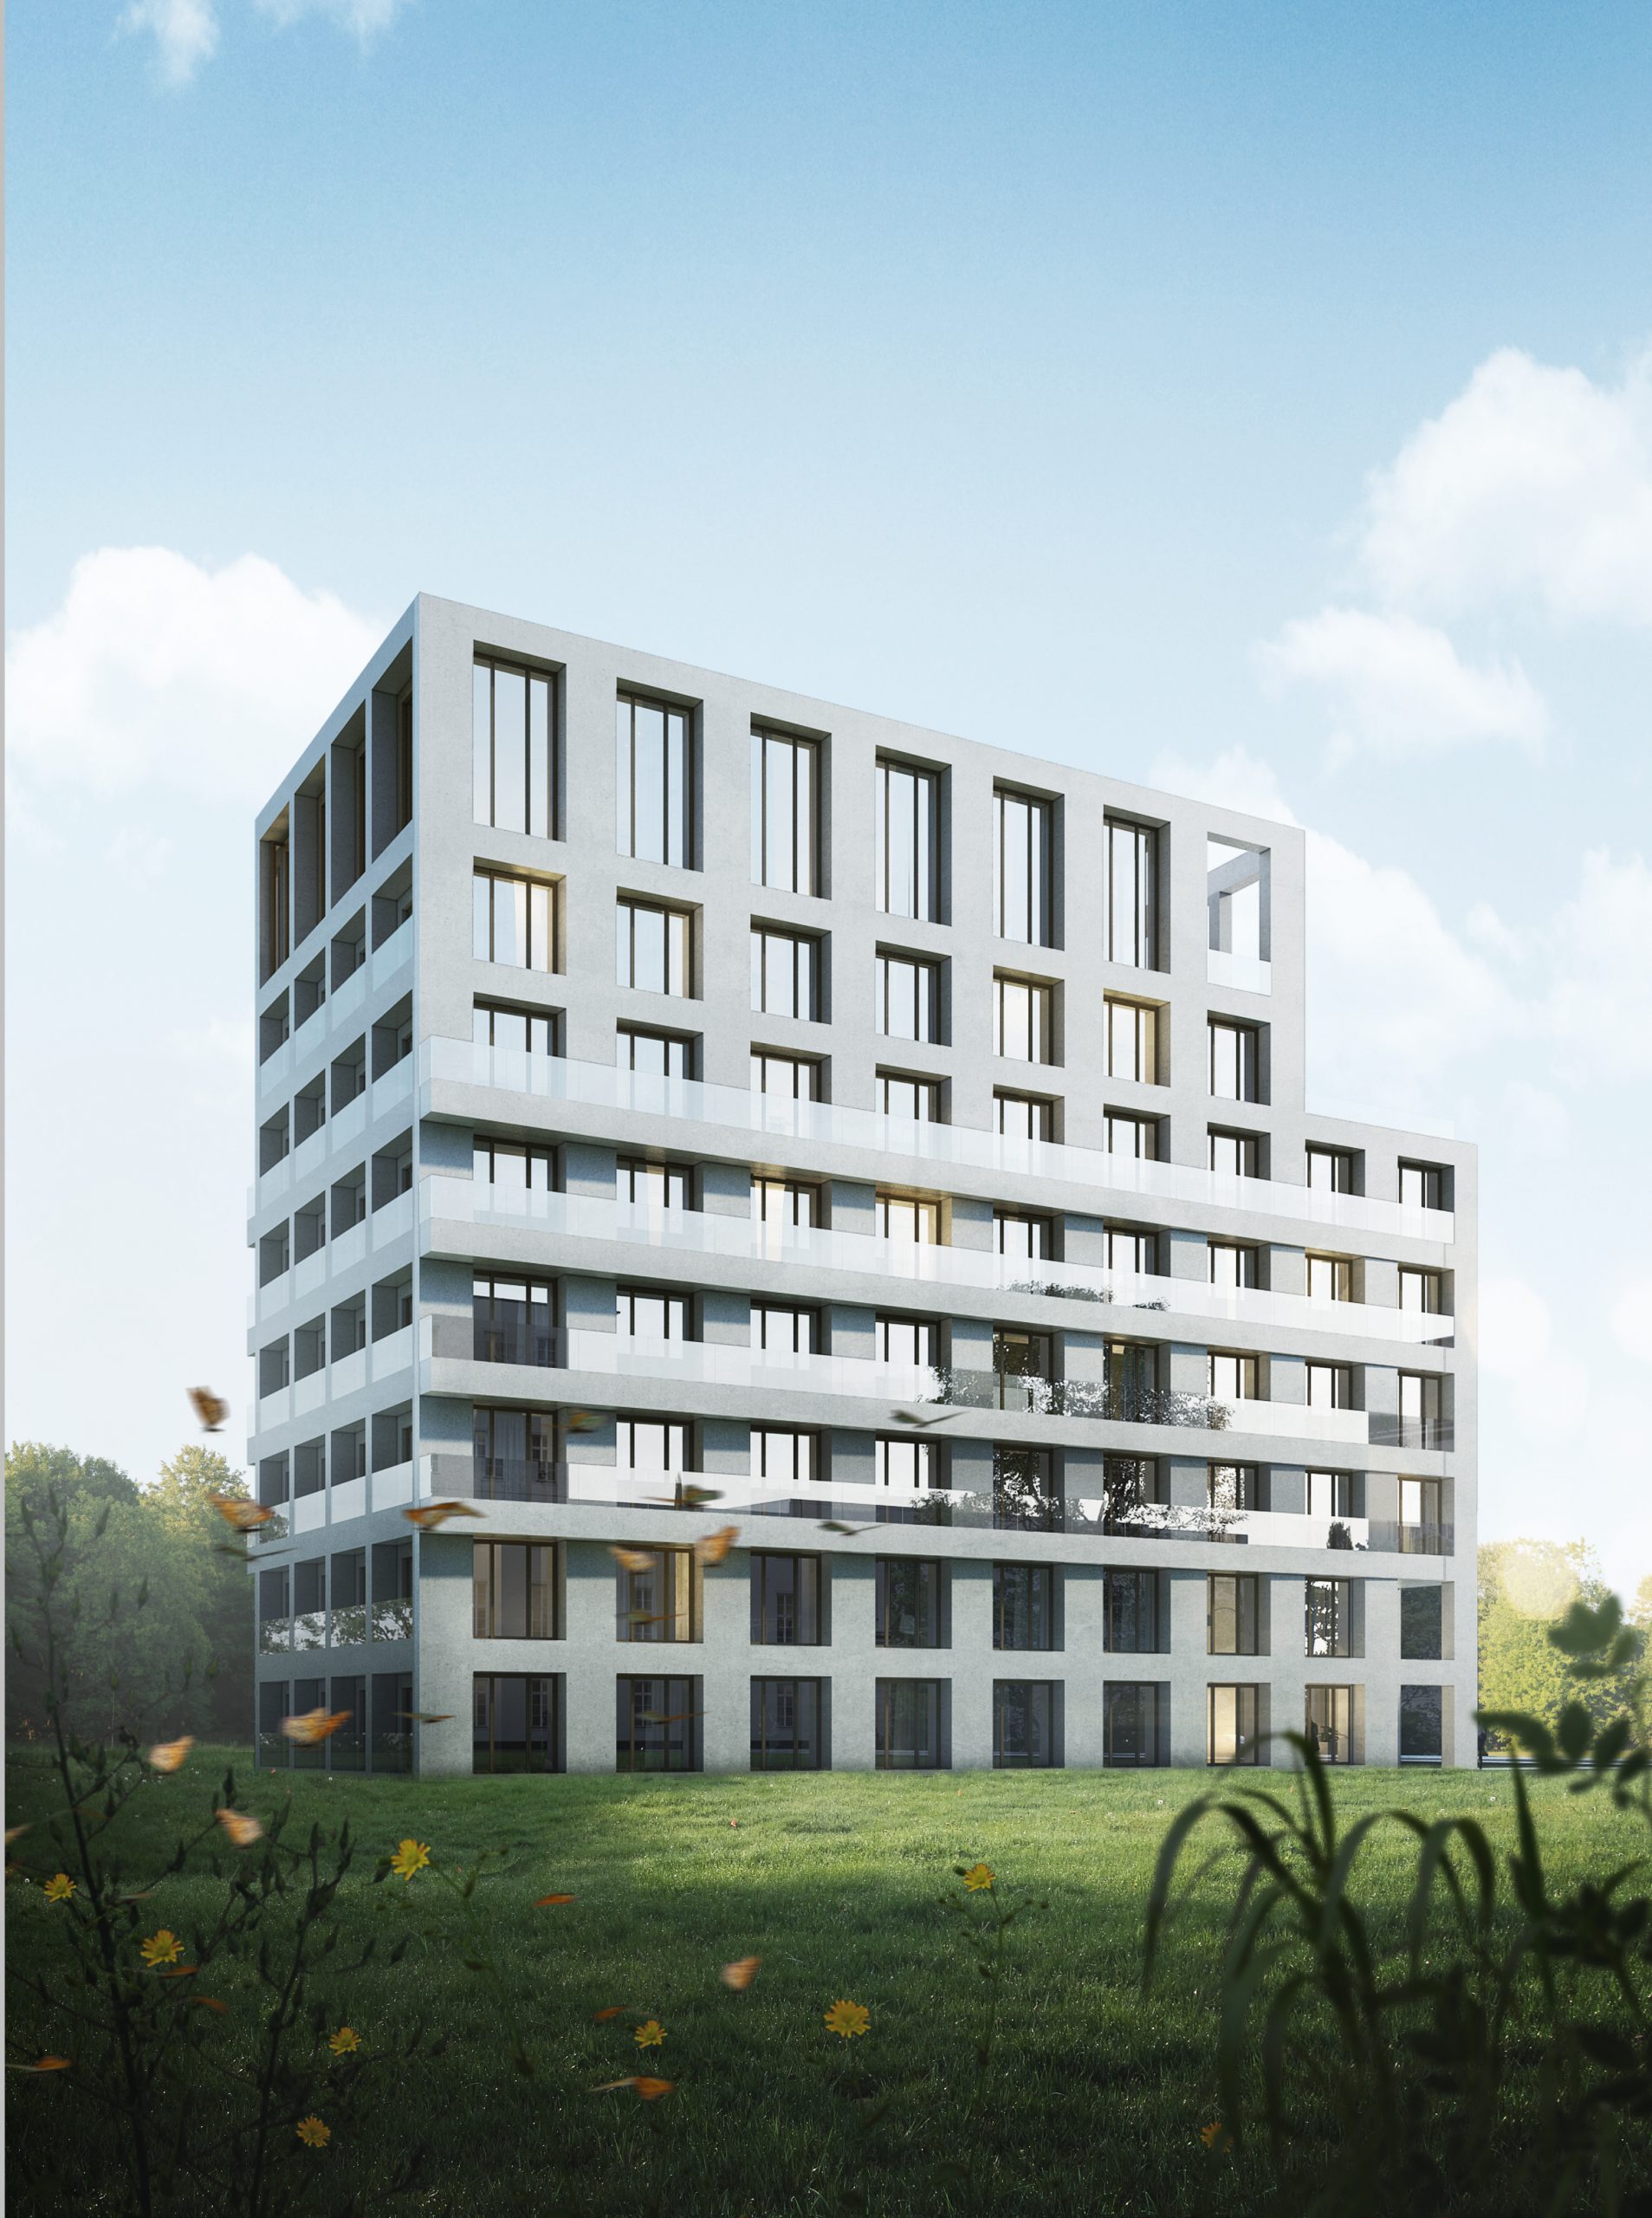 Abramowskiego-Housing-nowoczesny-budynek-wielorodzinny